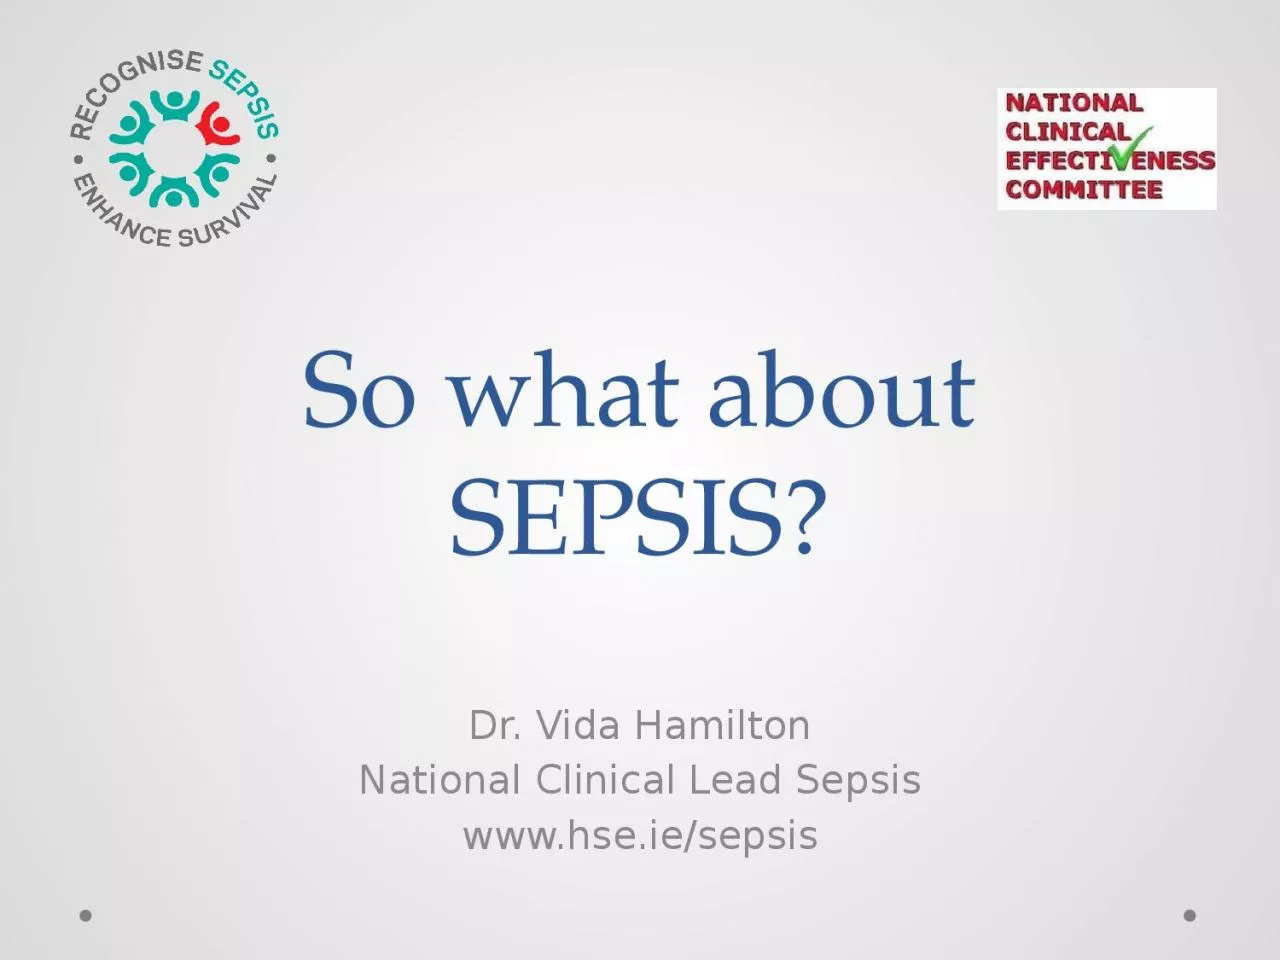 So what about SEPSIS? Dr. Vida Hamilton